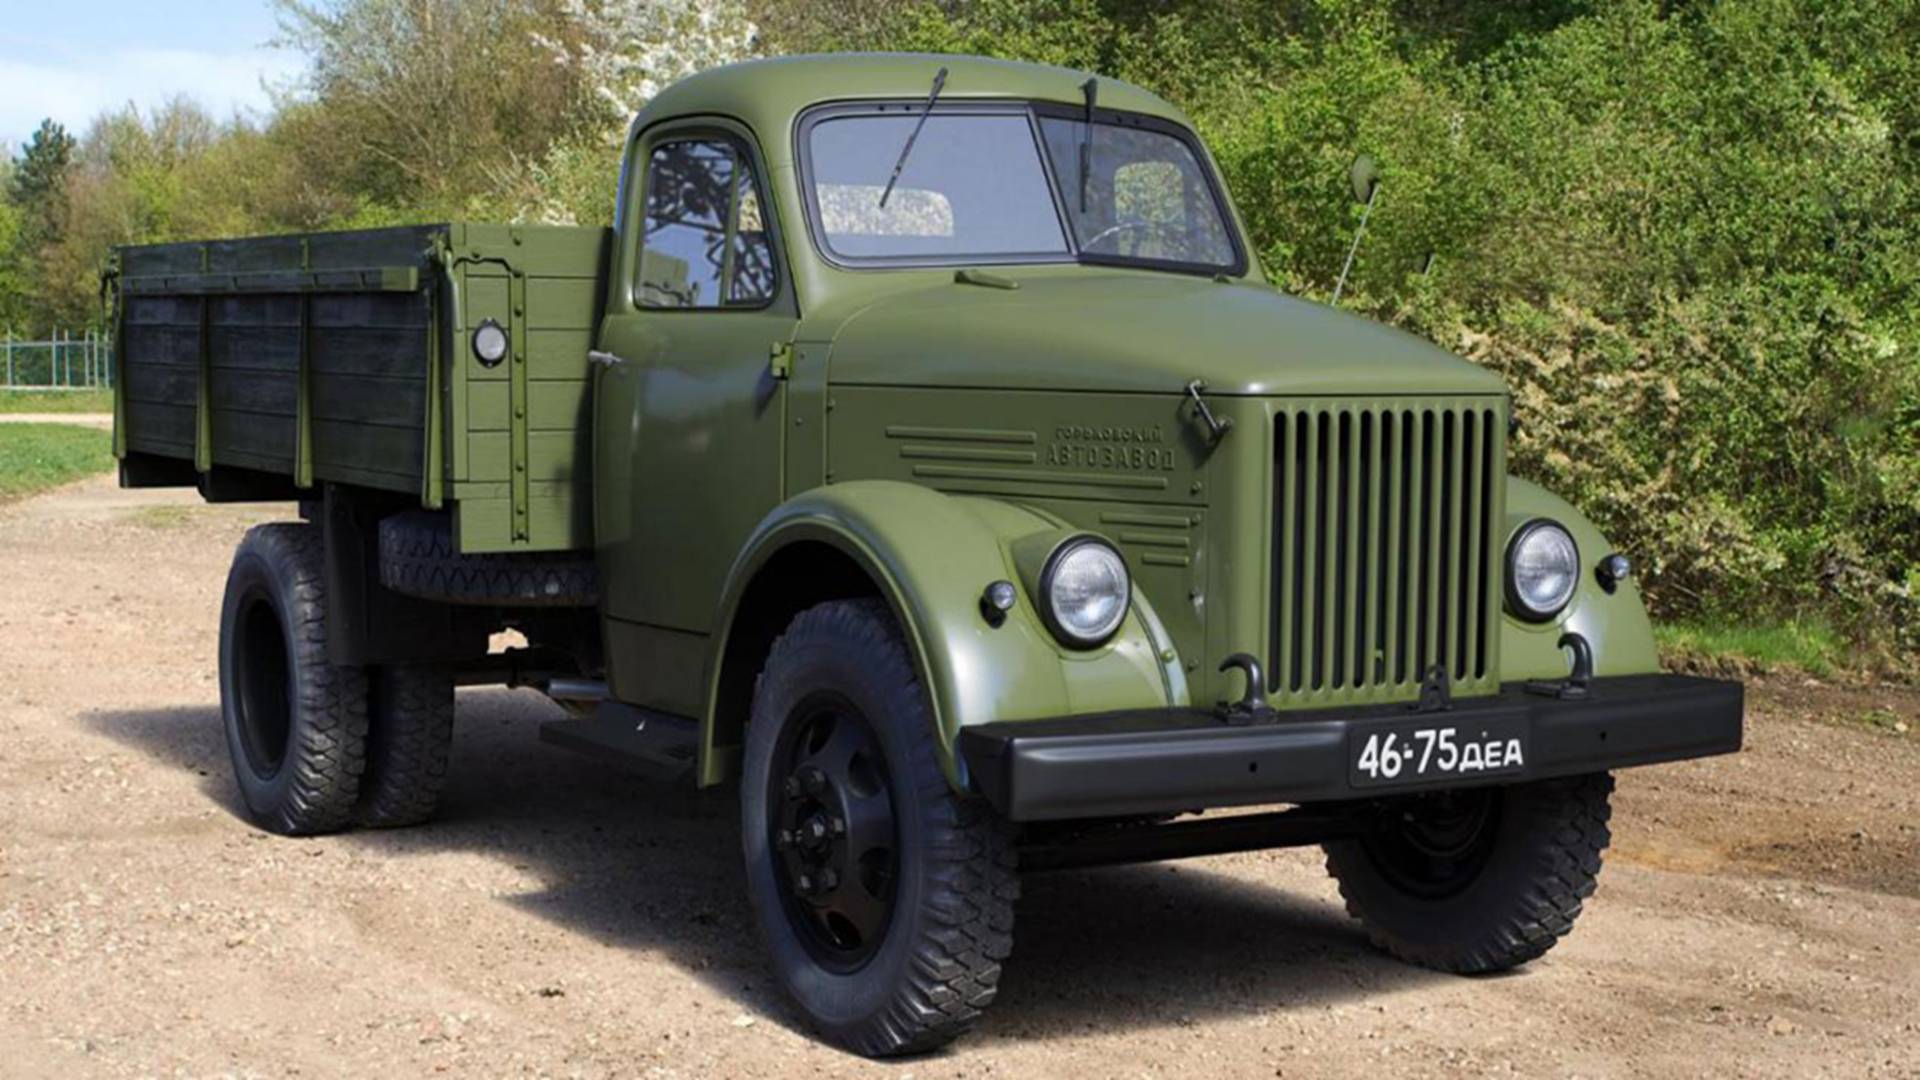 经典苏联嘎斯-51卡车,外观简洁大方操作简单,成为一代